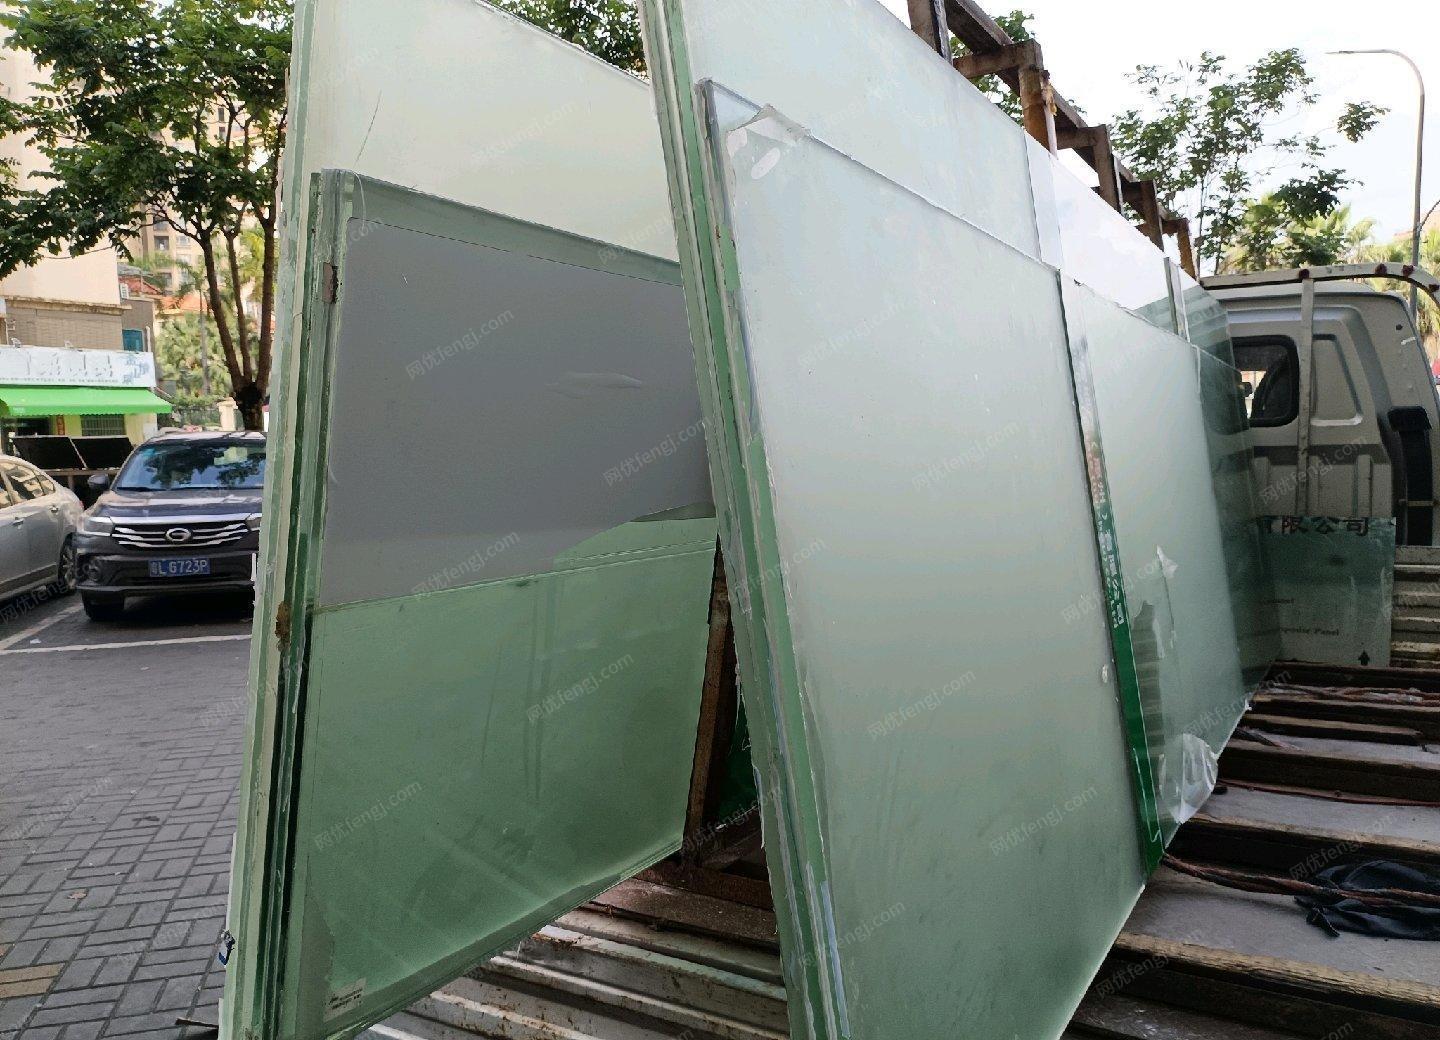 广东惠州钢化玻璃出售，规格303*103 厘米 12厘厚度